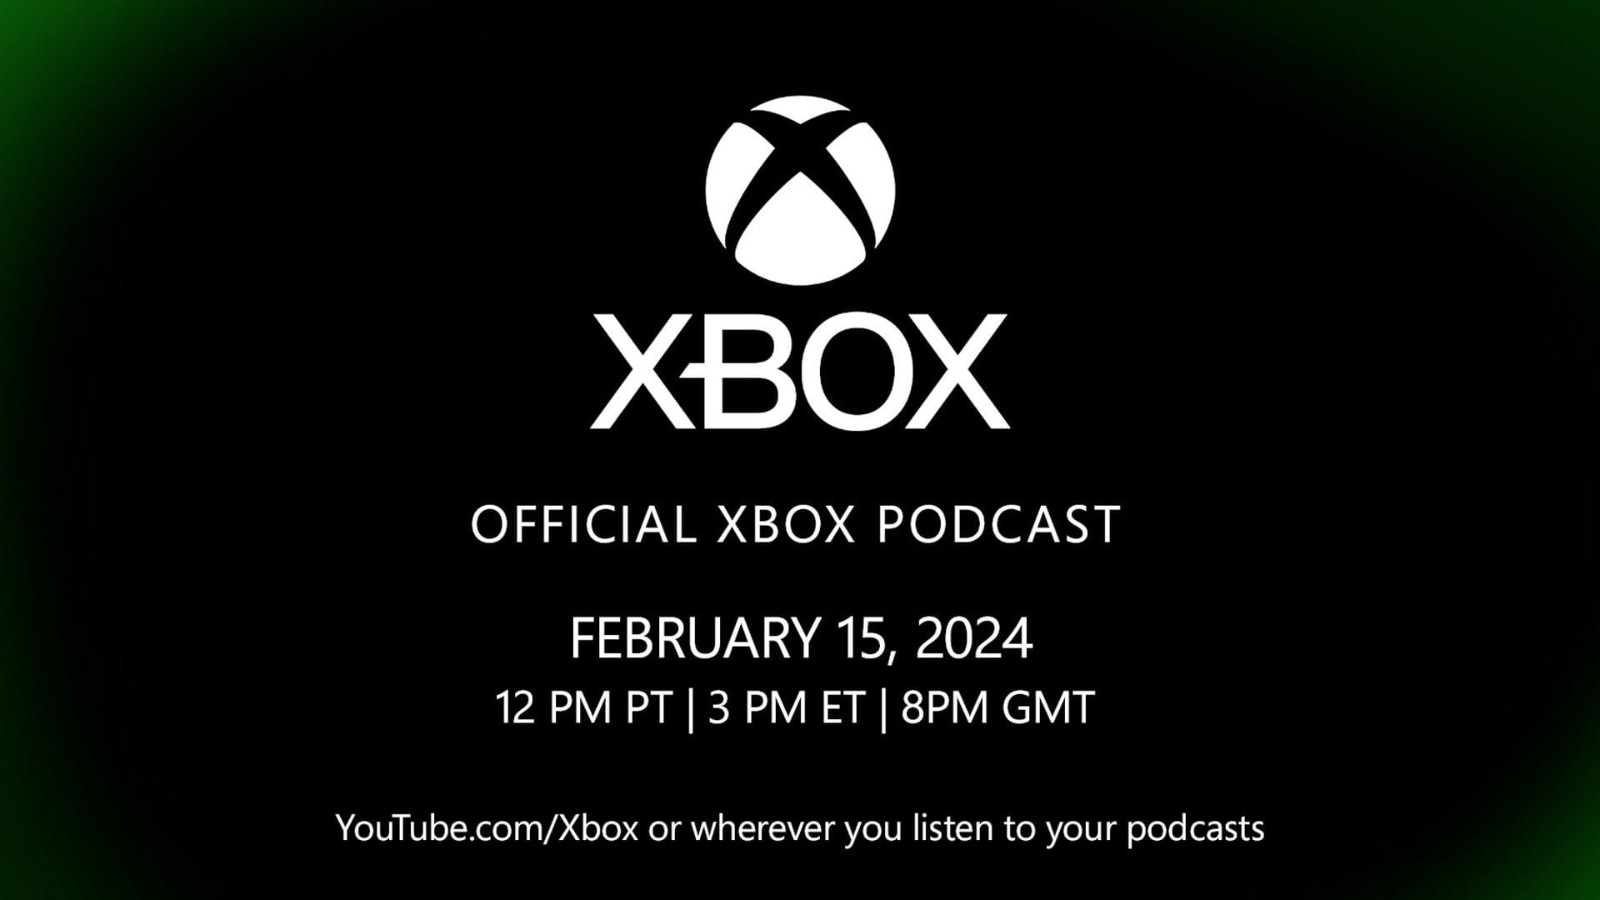 微軟宣布“聚焦Xbox業務未來”節目上線日期